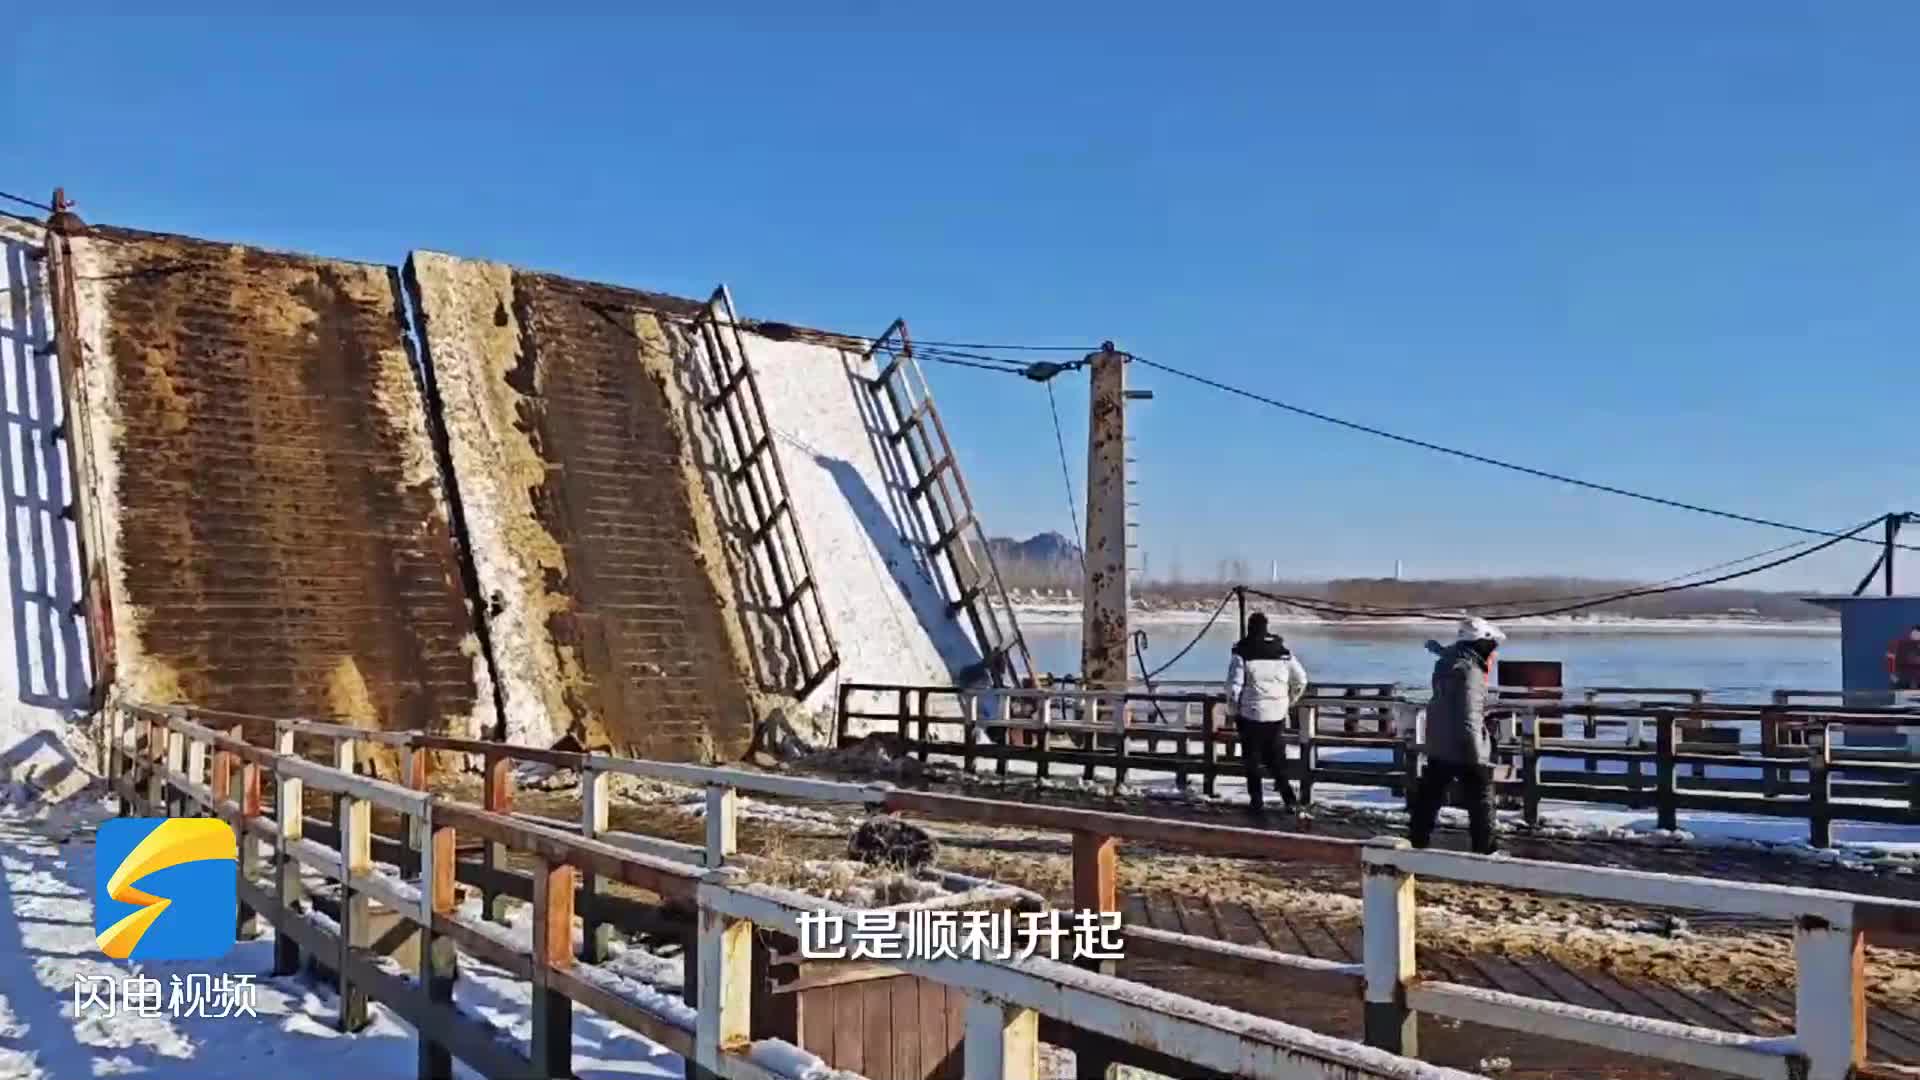 因黄河凌期和寒潮天气影响 济南泺口浮桥暂时拆除